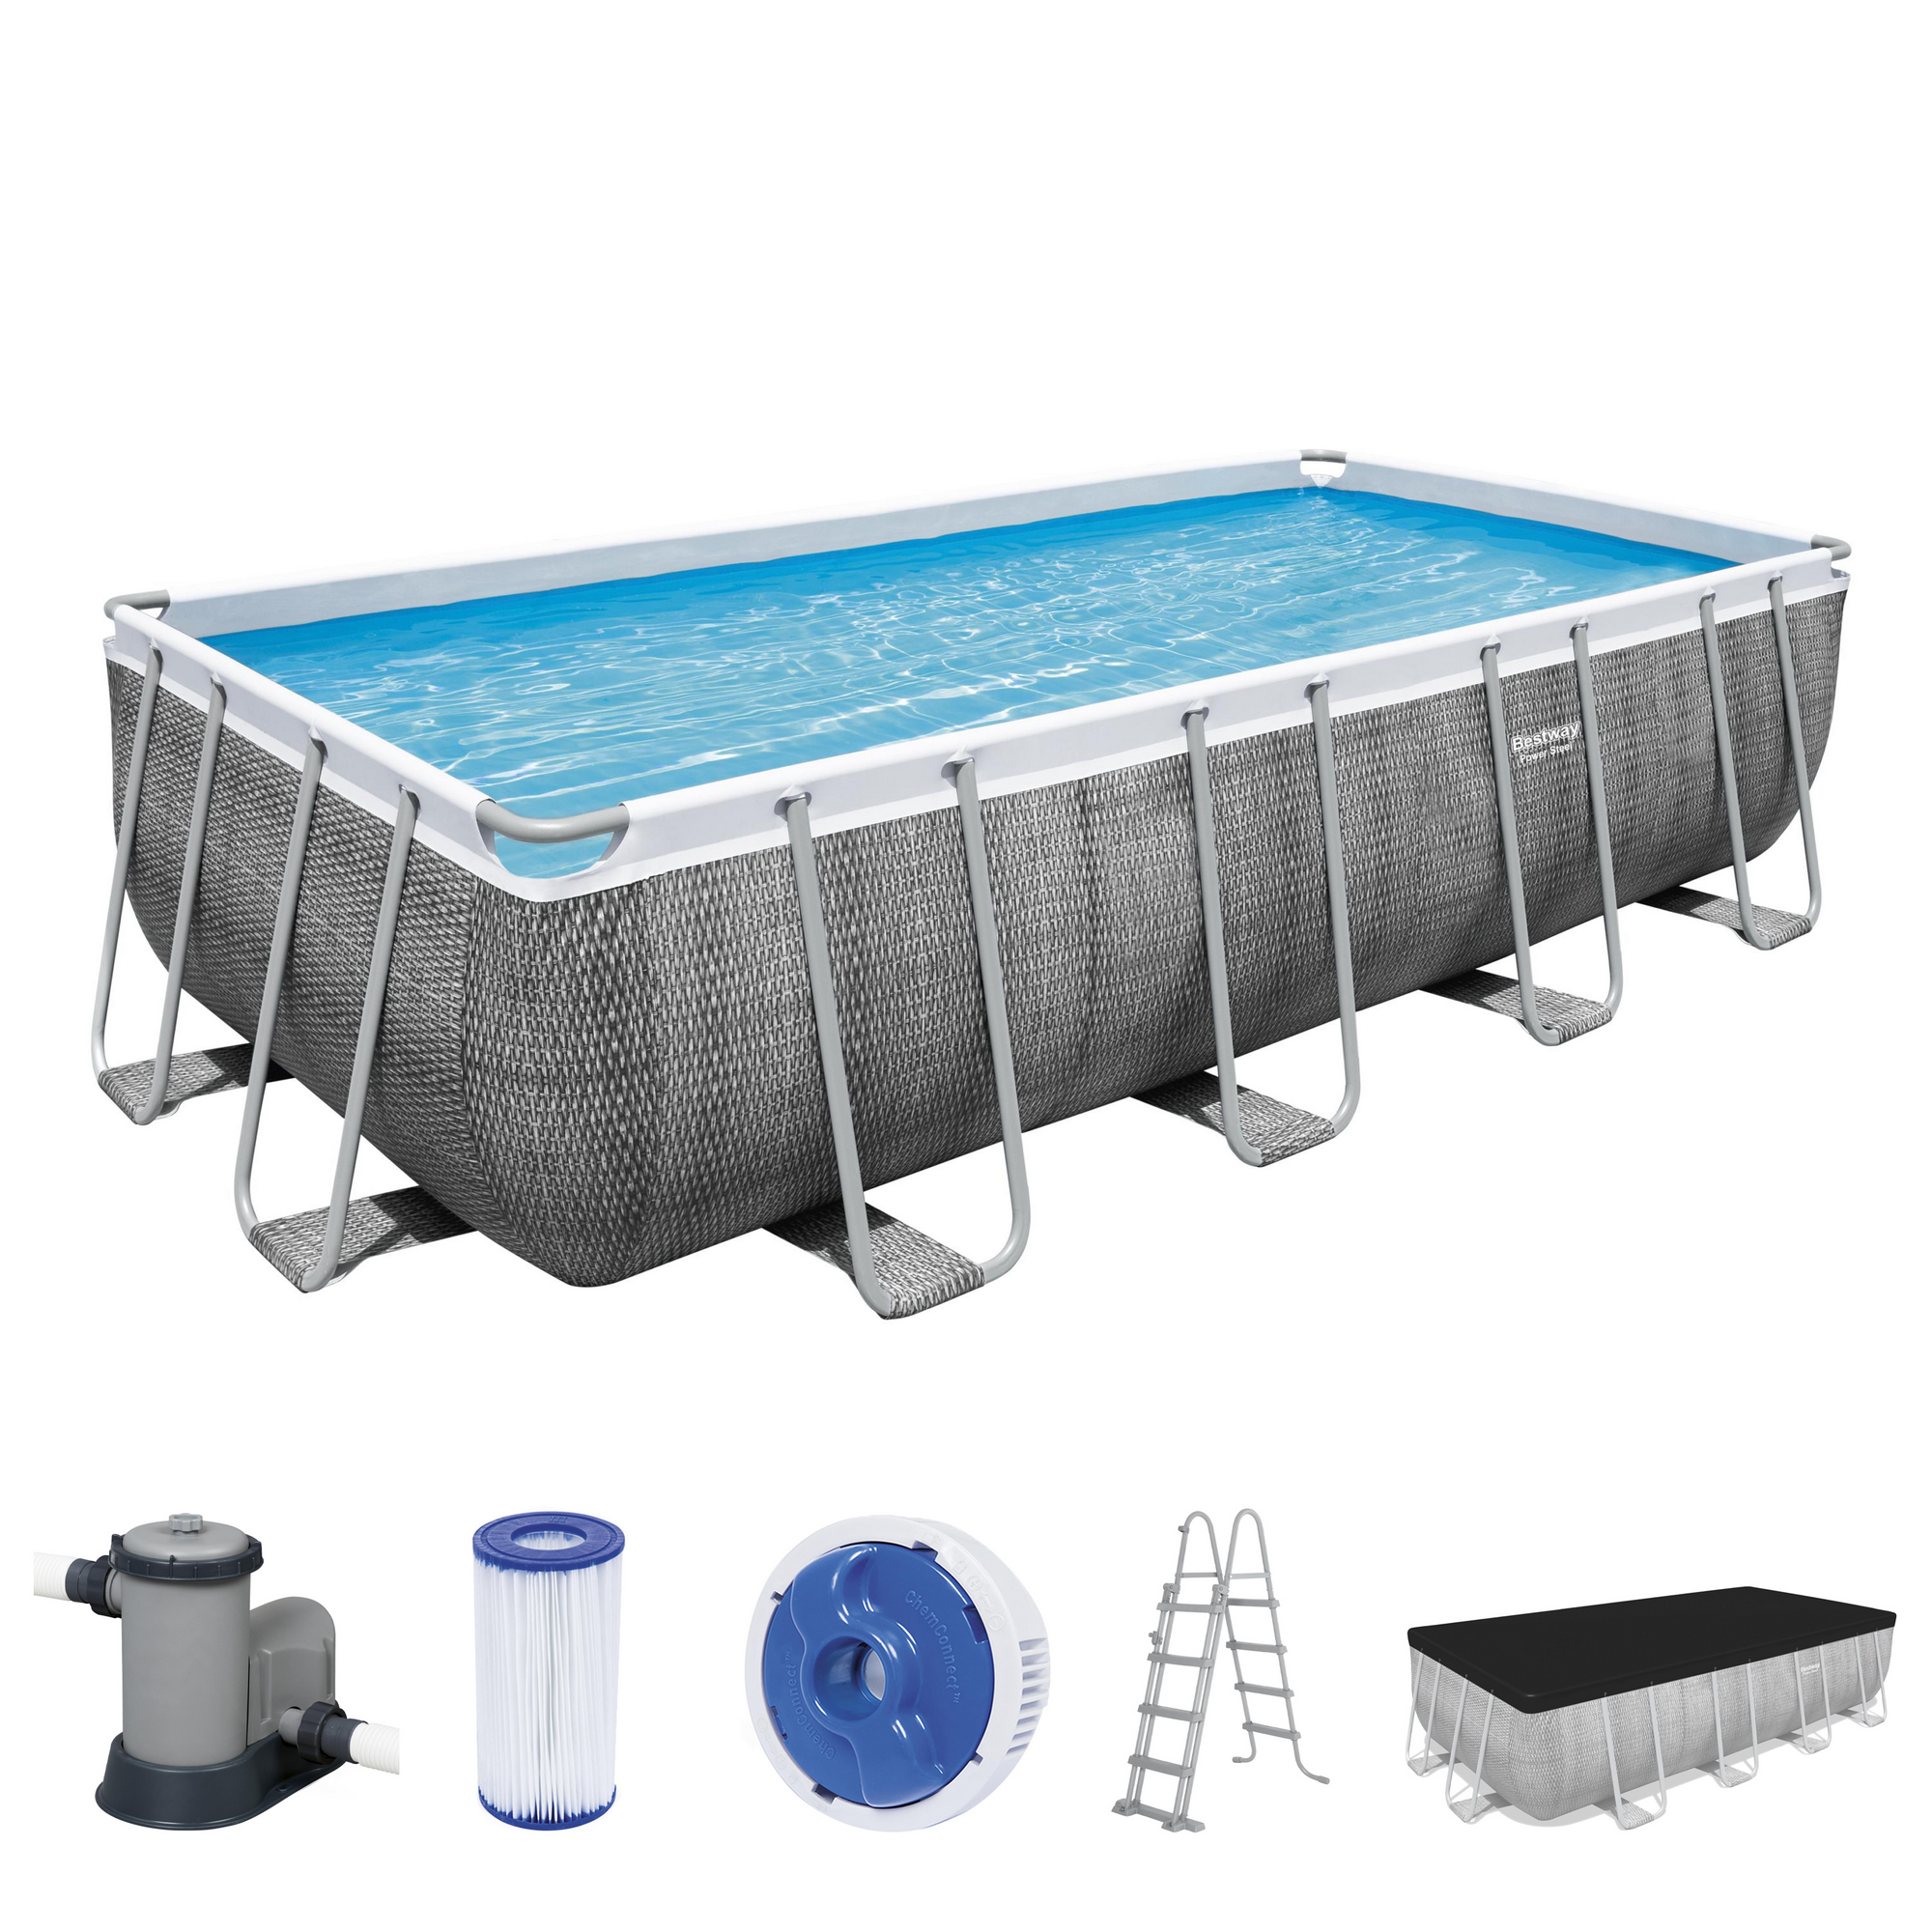 Frame-Pool-Set 'Power Steel' 549 x 274 x 122 cm mit Sicherheitsleiter und Filterpumpe + product picture